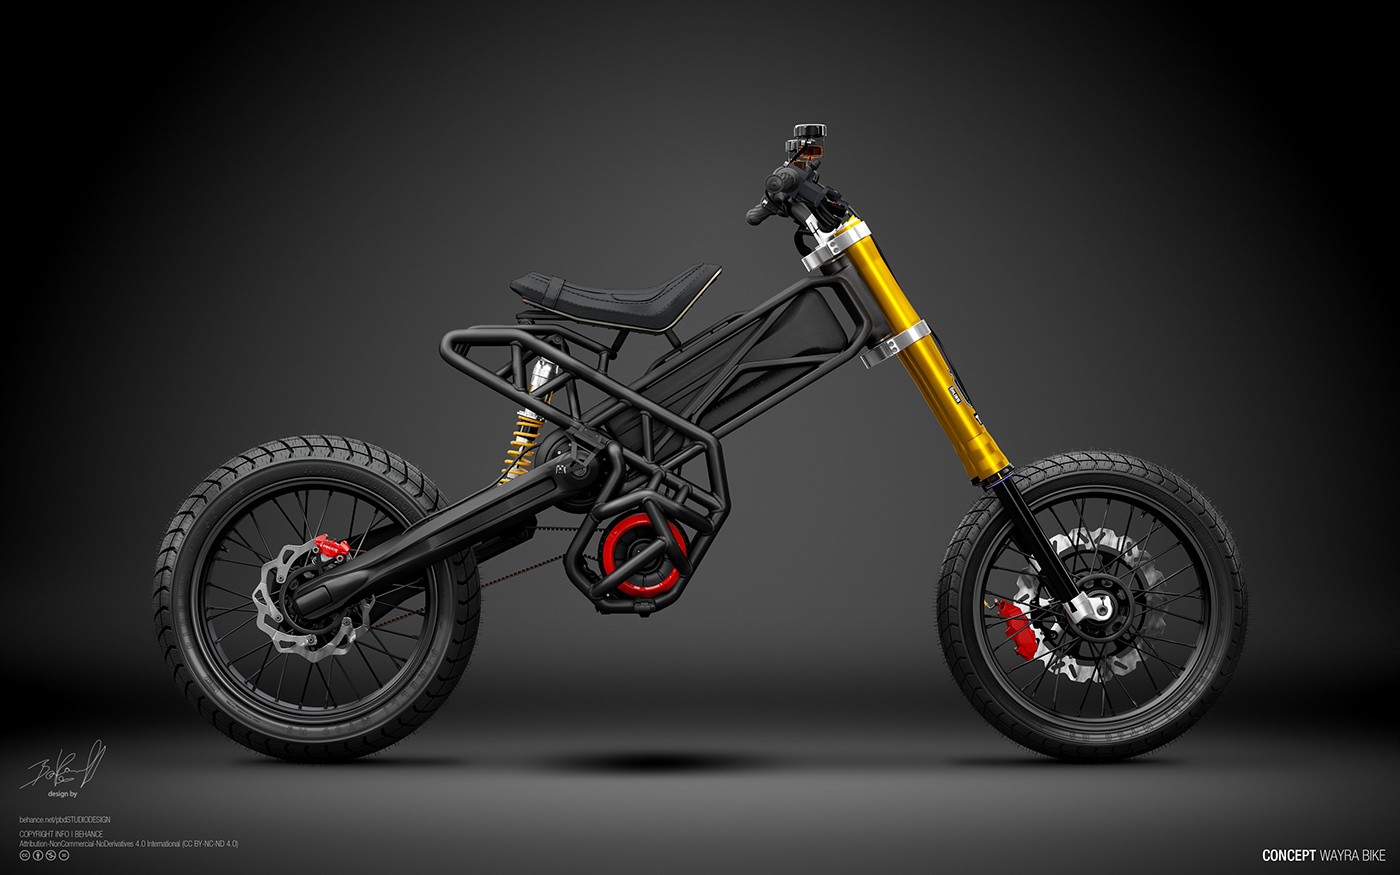 wayra 电动摩托车概念 本作品转载于原创设计师 :  pablo baranoff